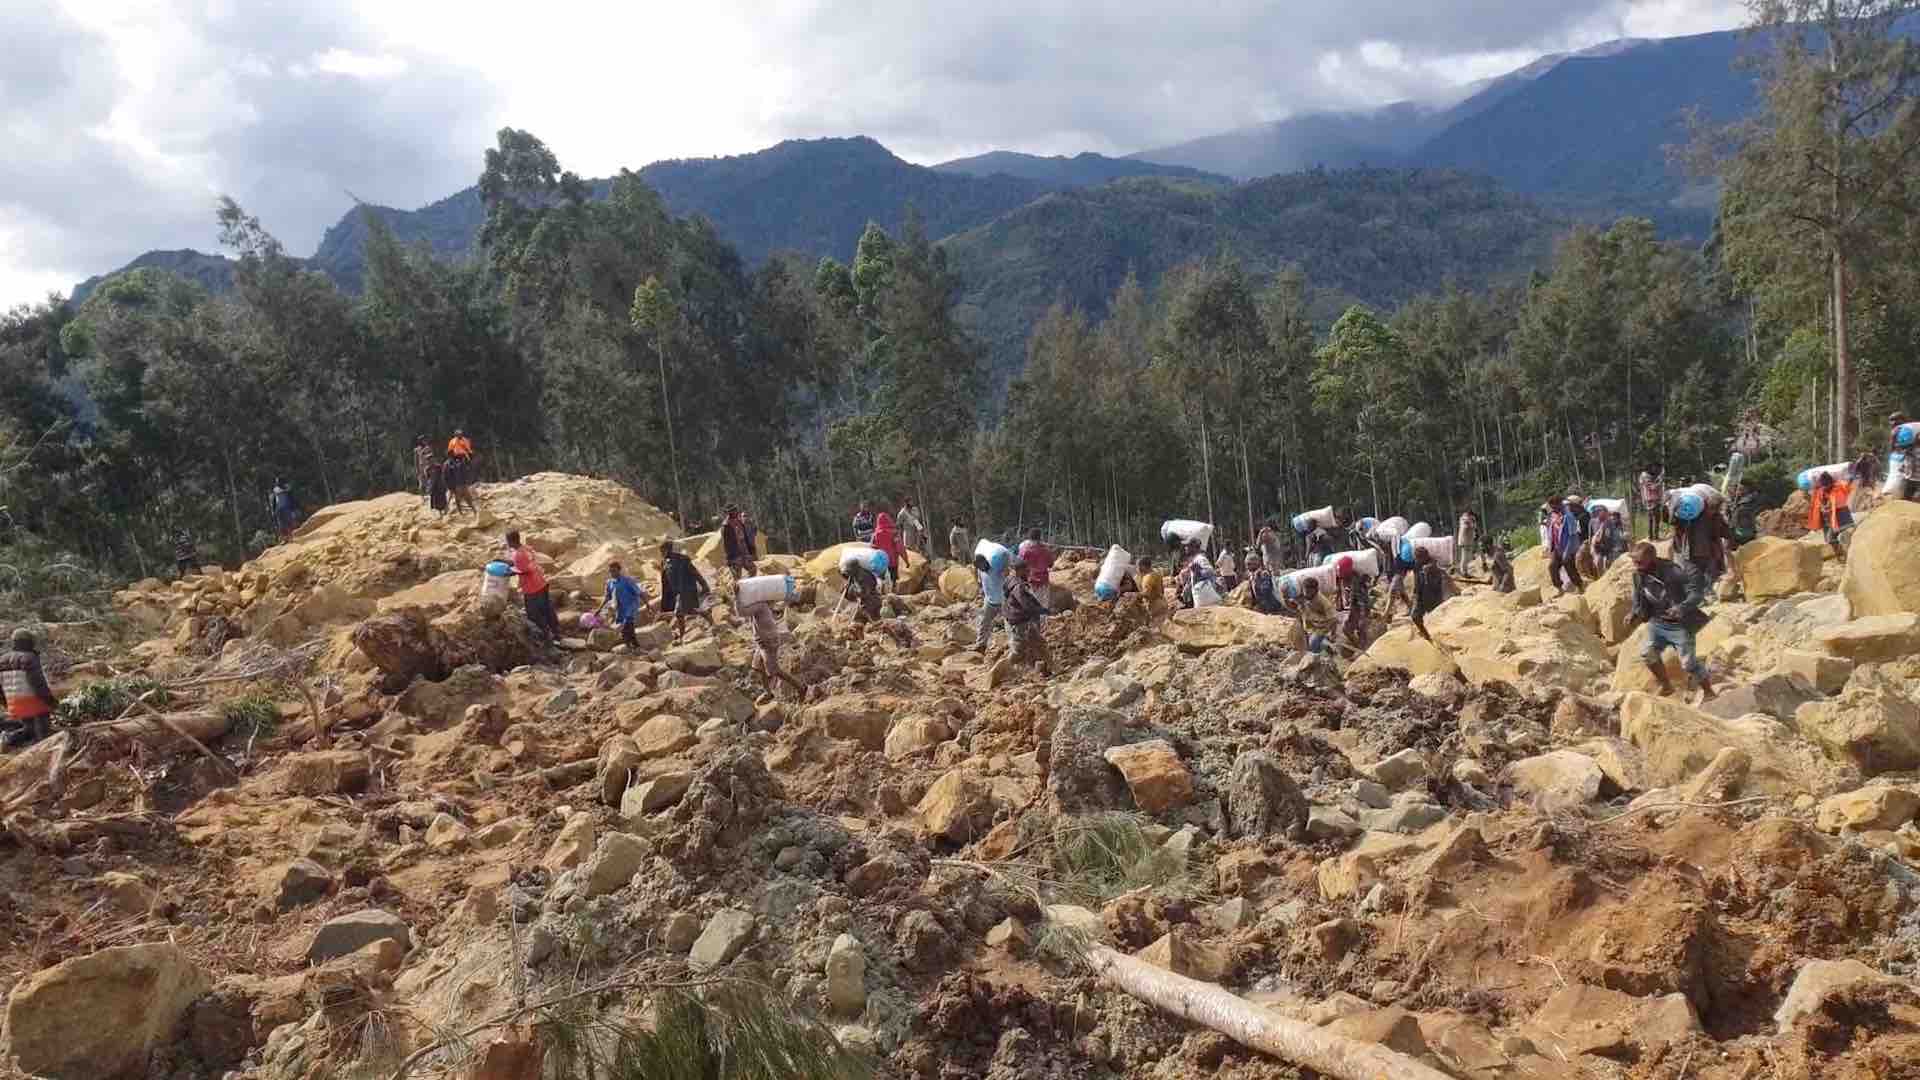 پاپوا نیو گنی میں مٹی کے تودے گرنے سے ہلاکتوں کی بڑھتی ہوئی تعداد نے خطرے کی گھنٹی بجا دی ہے۔